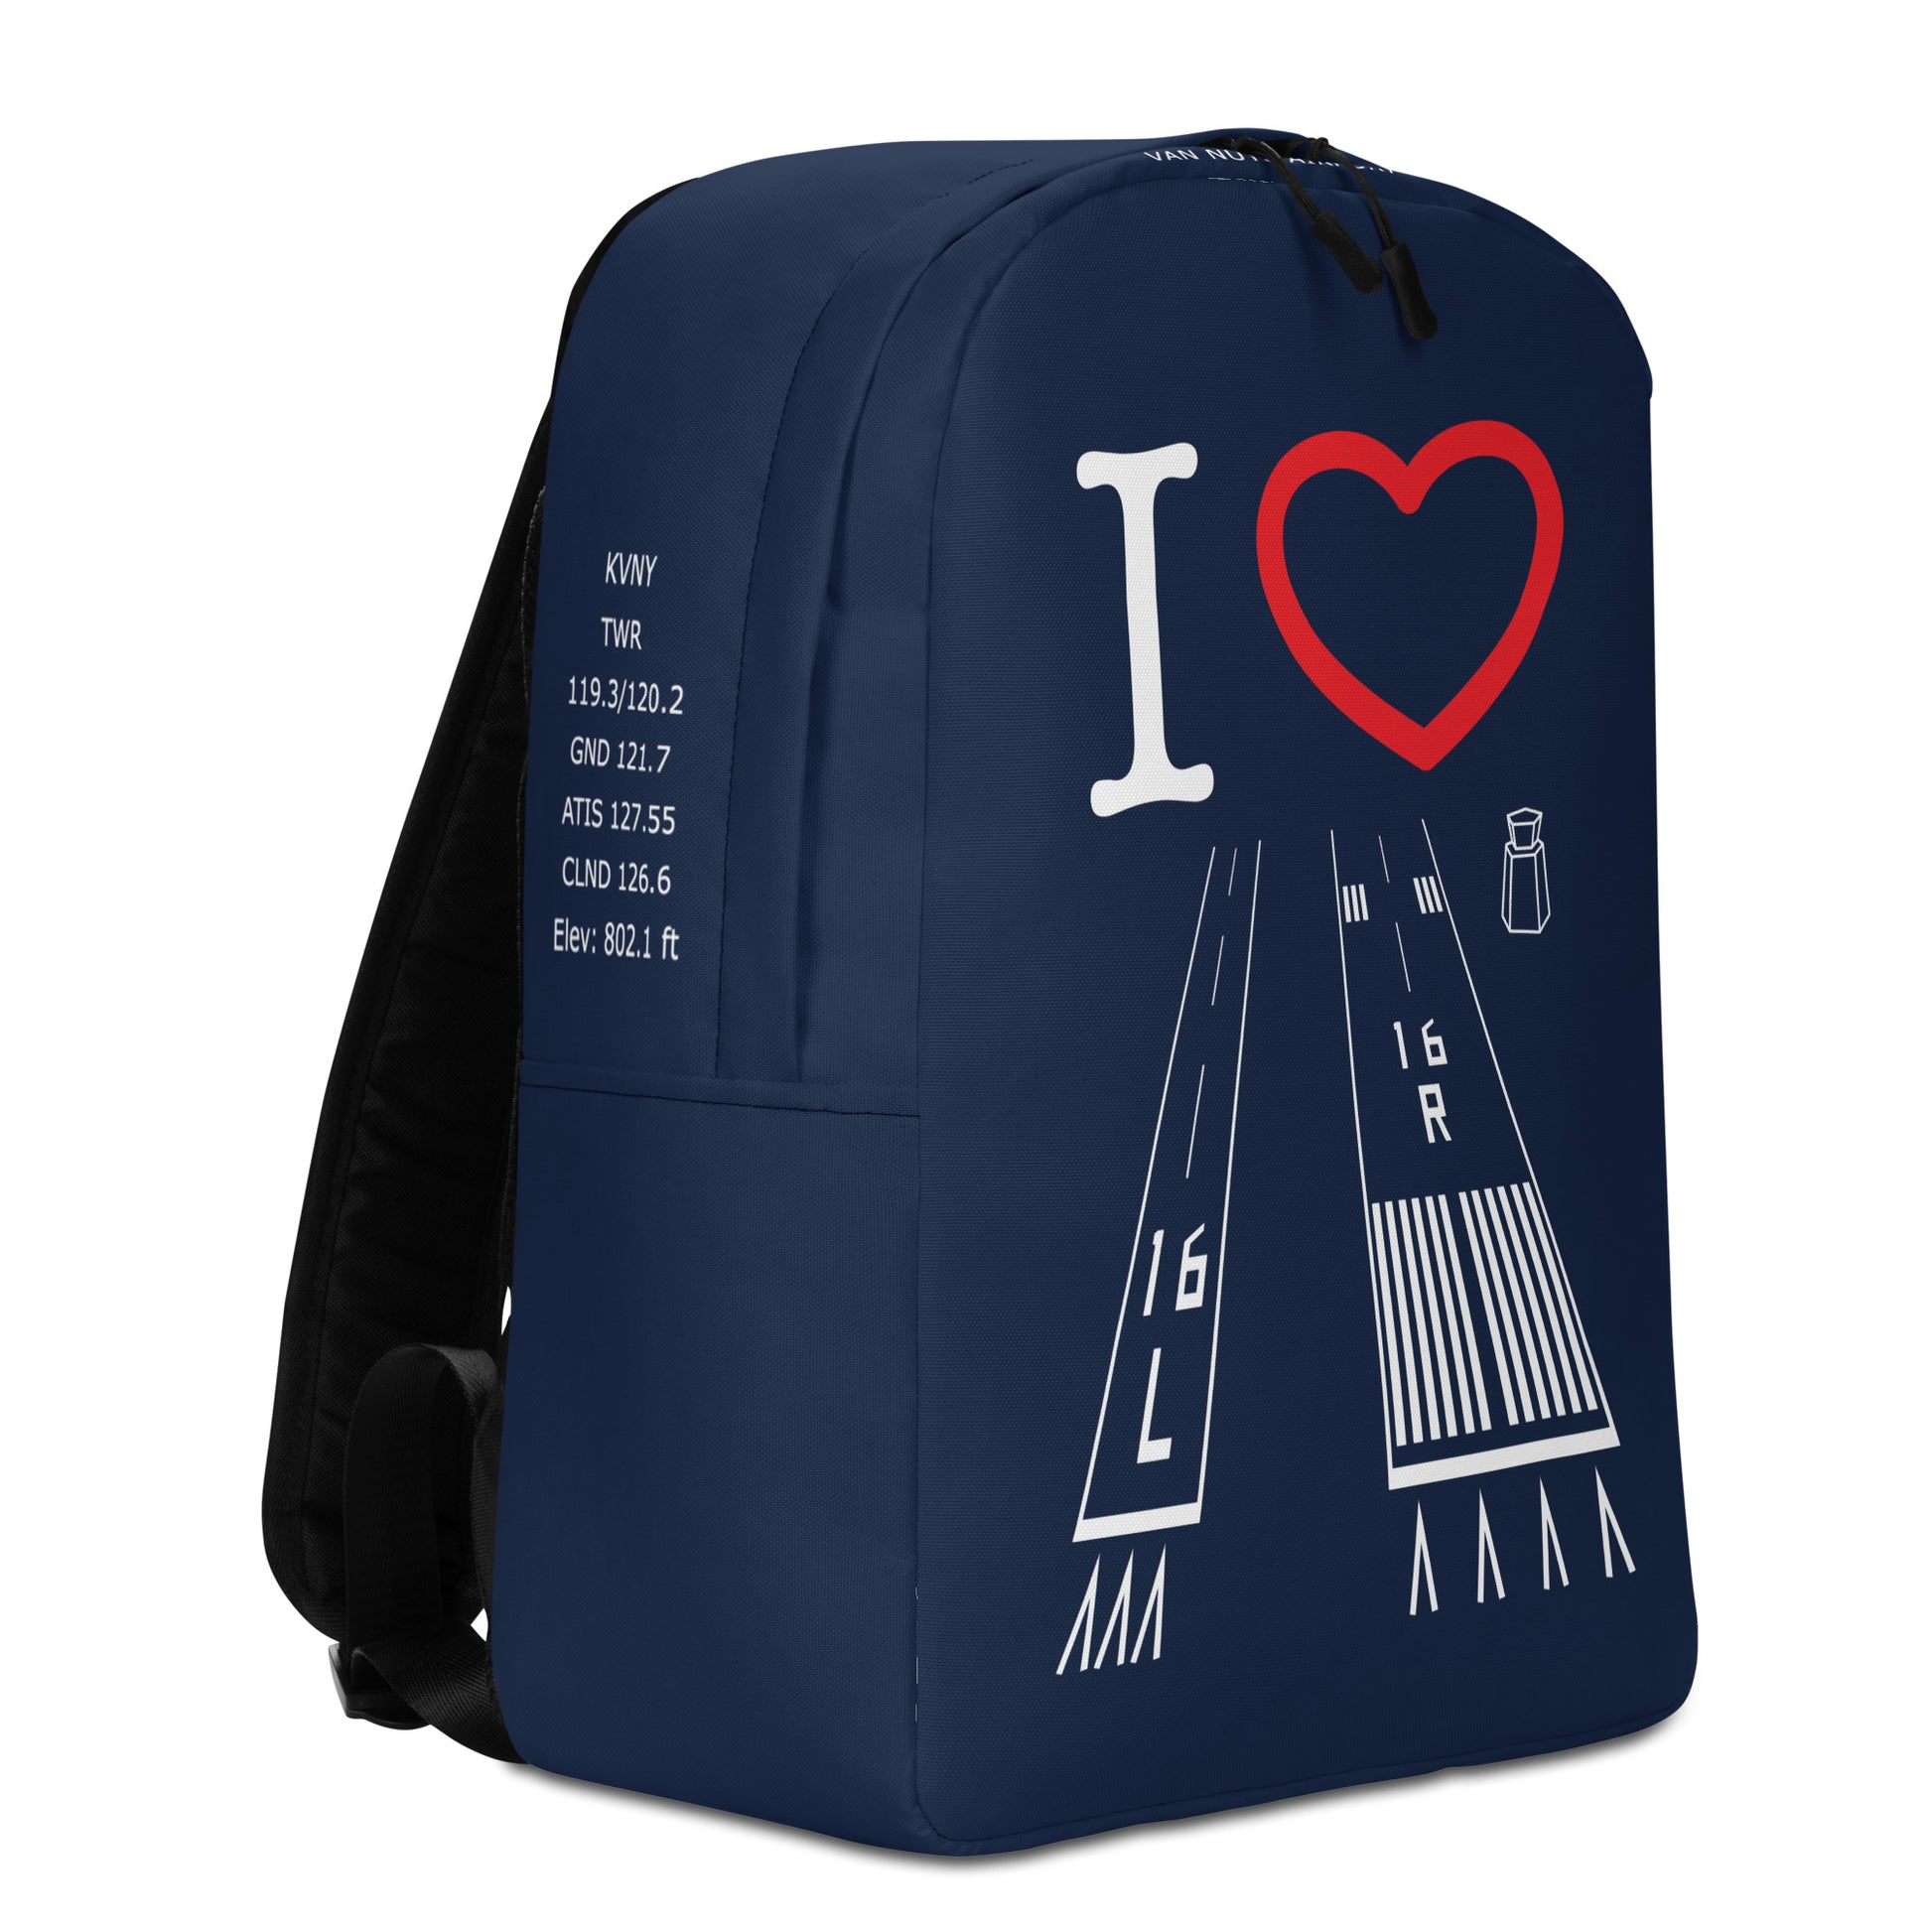 Van Nuys Airport Runways 16L / 16R - navy minimalist backpack